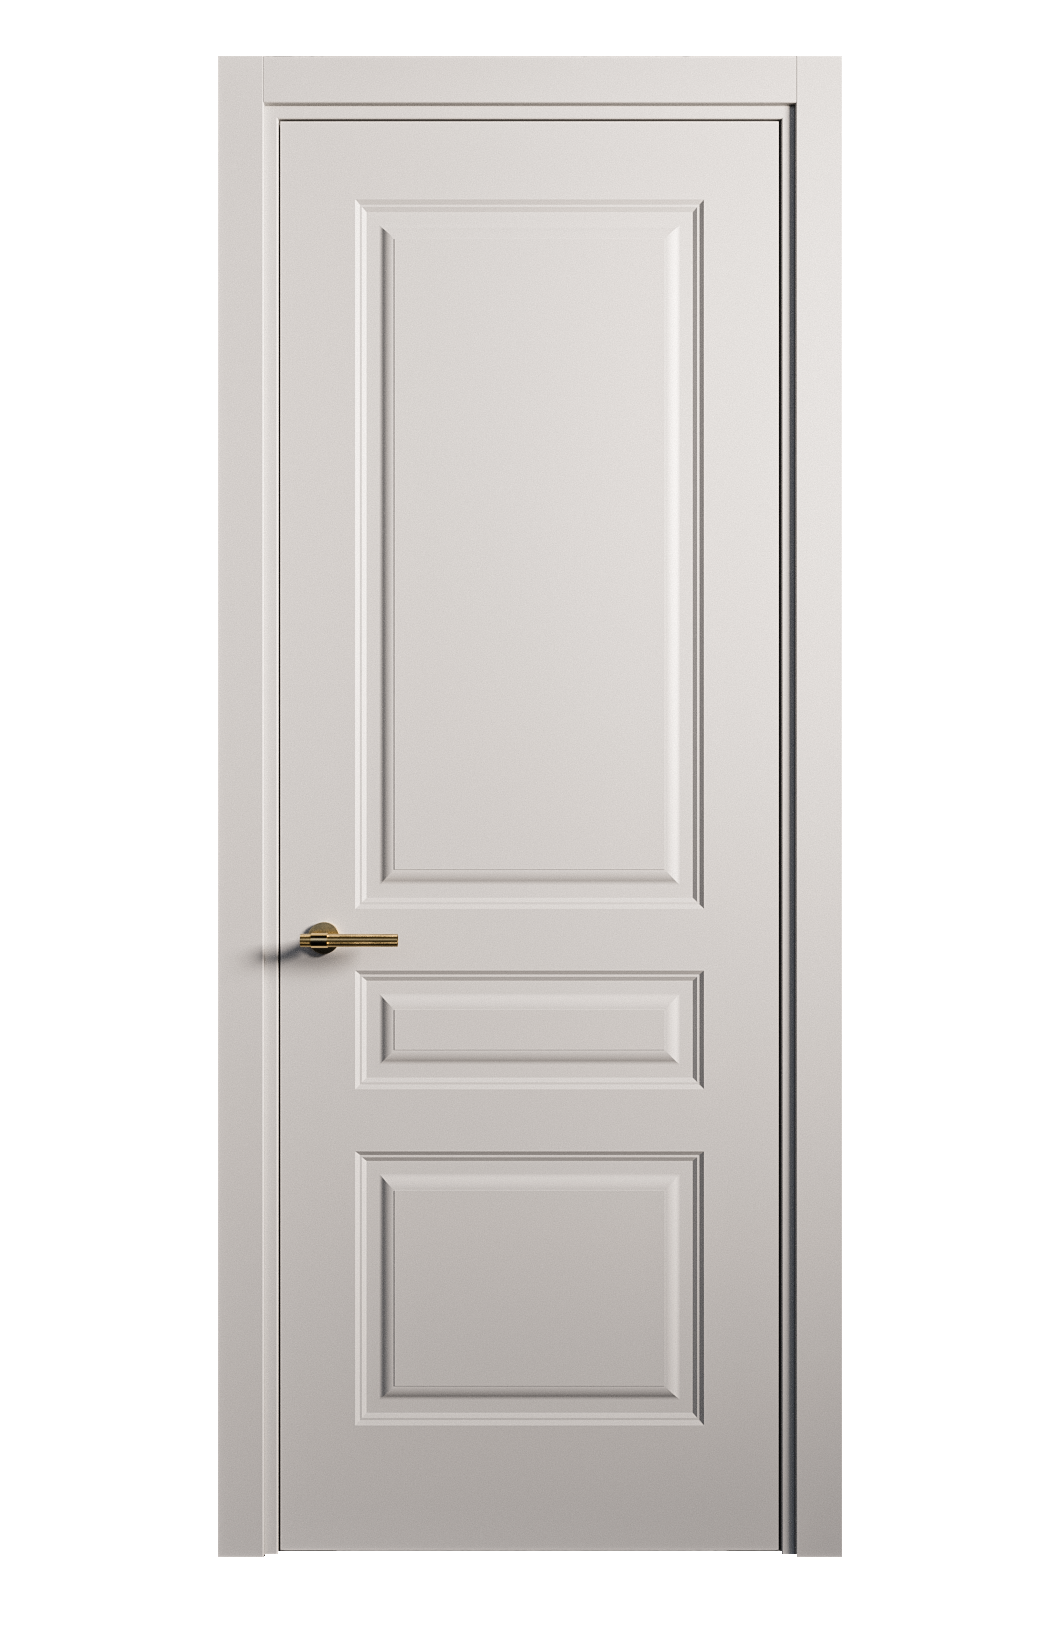 Межкомнатная дверь Вита-2 глухая эмаль ral 7047 26336